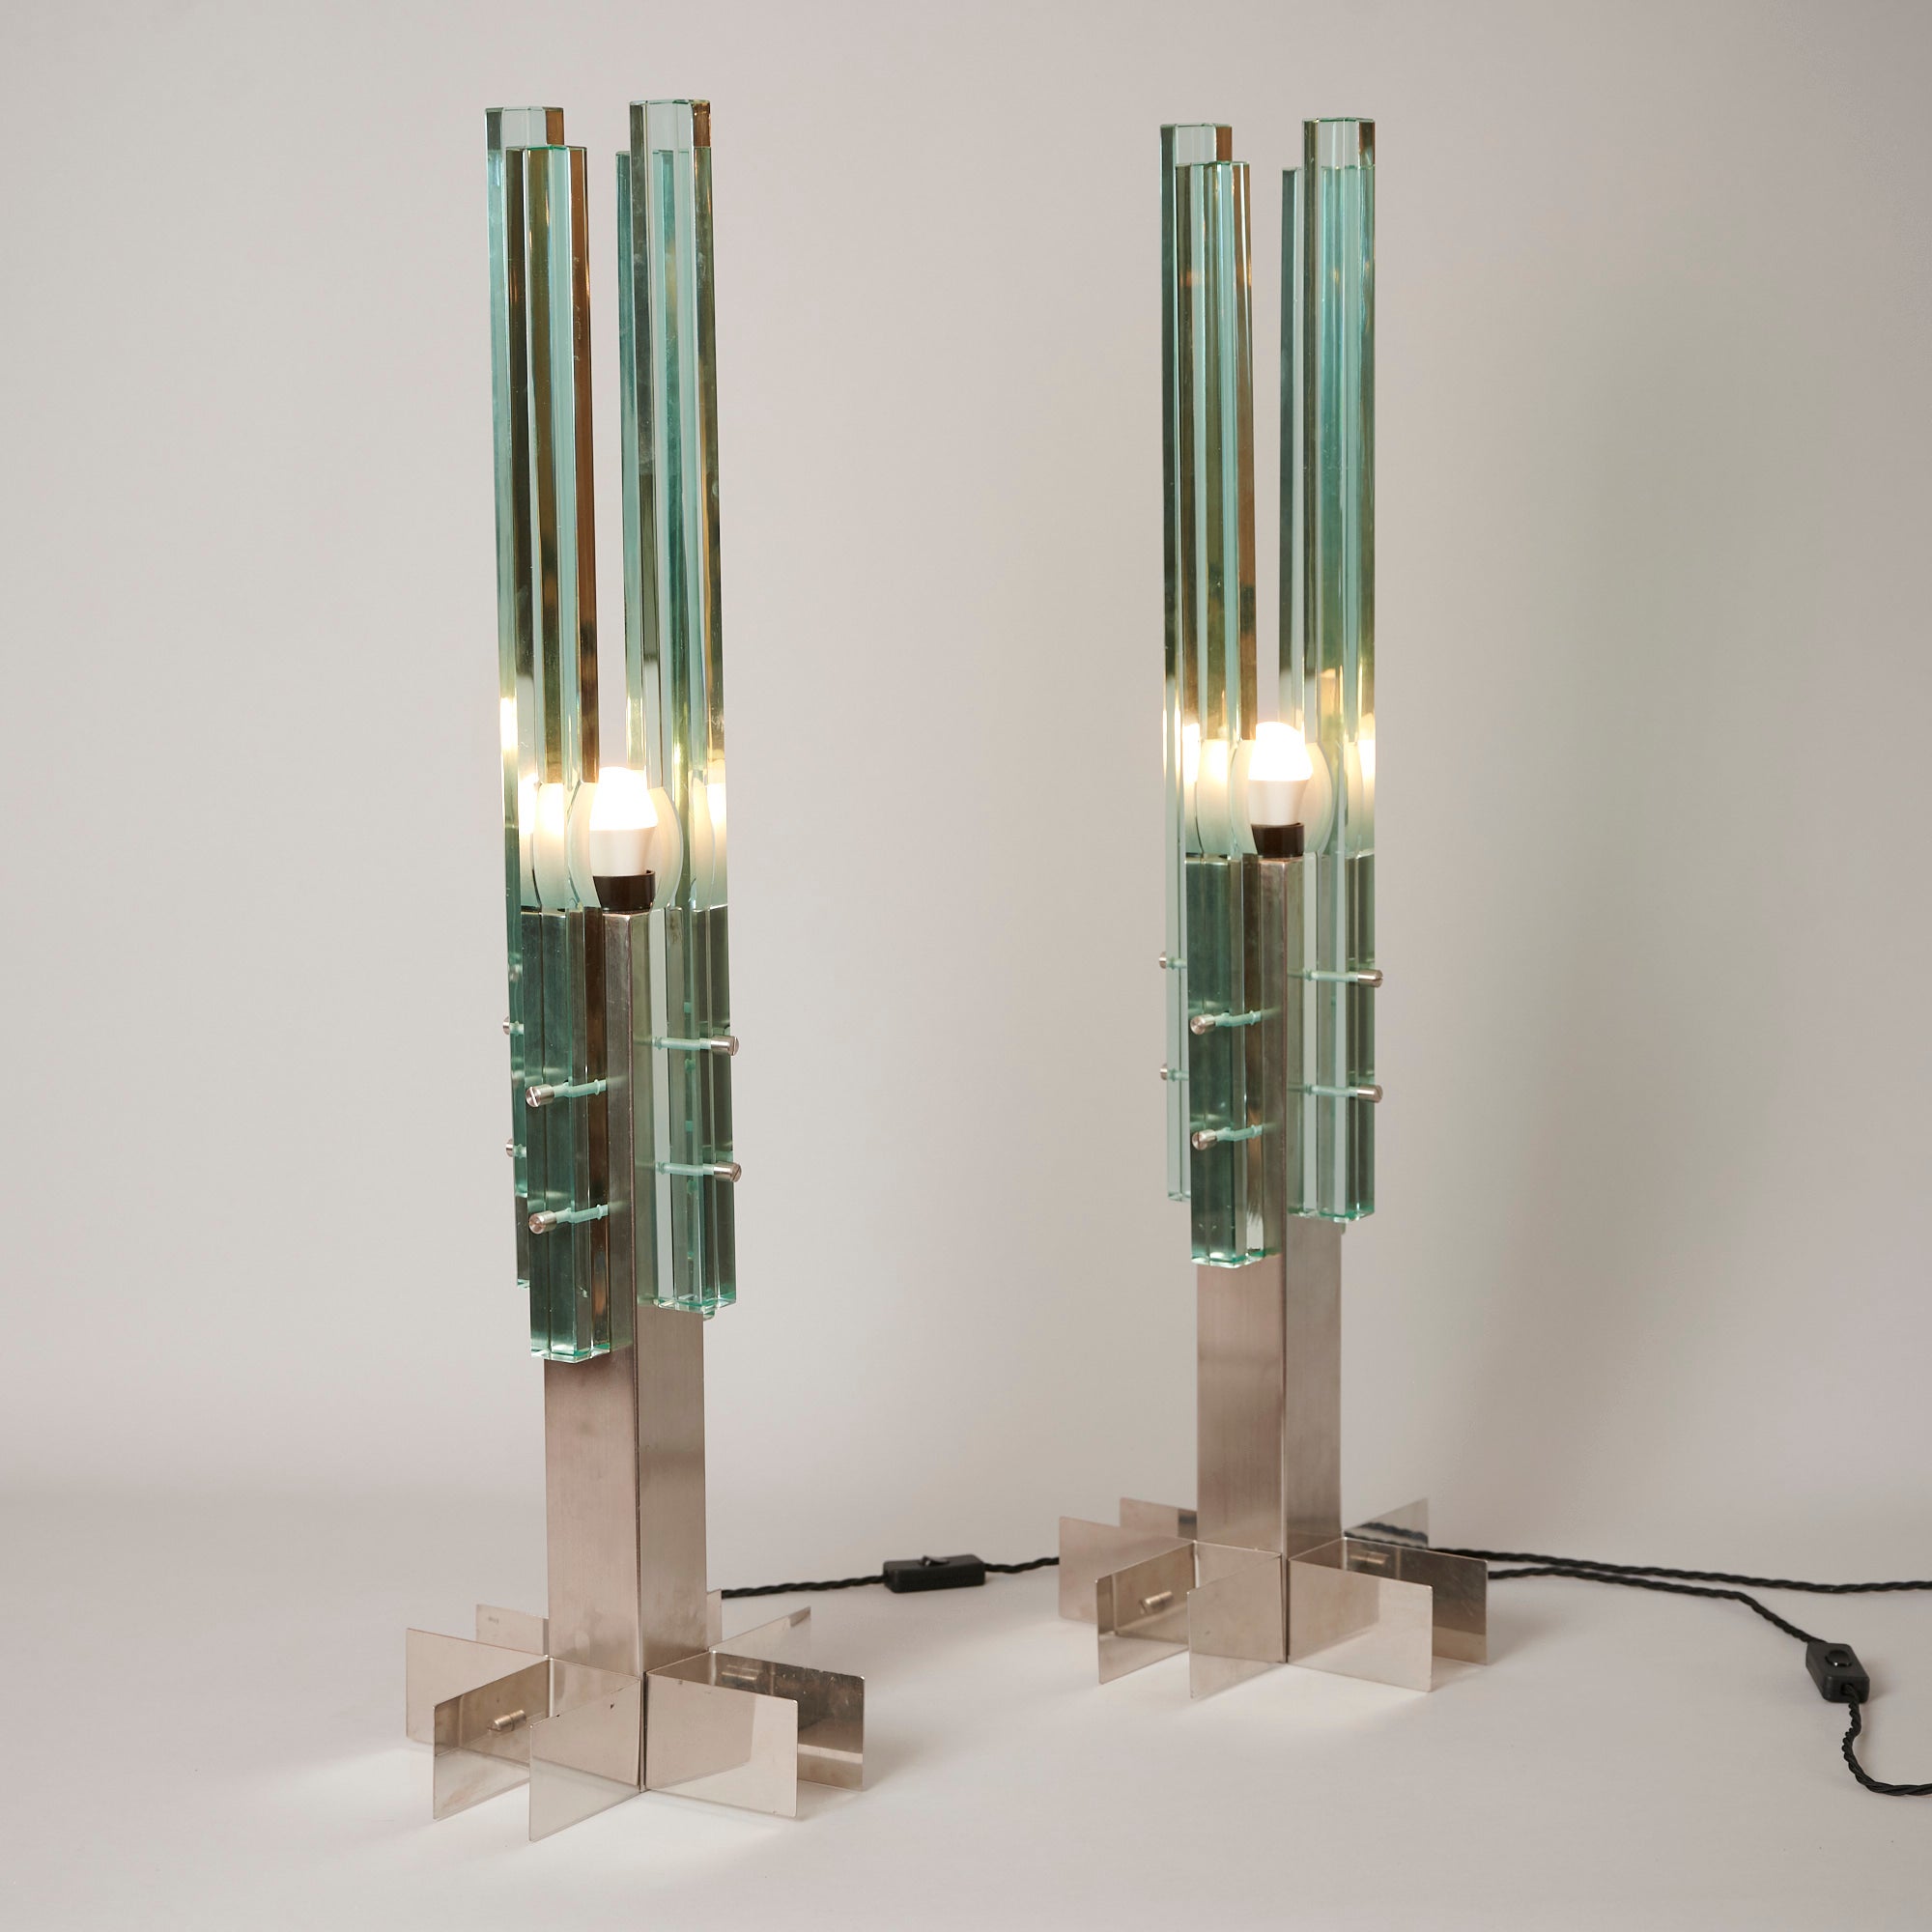 Une rare paire de lampes de table Gallotti et Radice.

Ce modèle existe en trois tailles. Il s'agit de la plus grande taille. 

Mesures : Hauteur. 65cm.

    